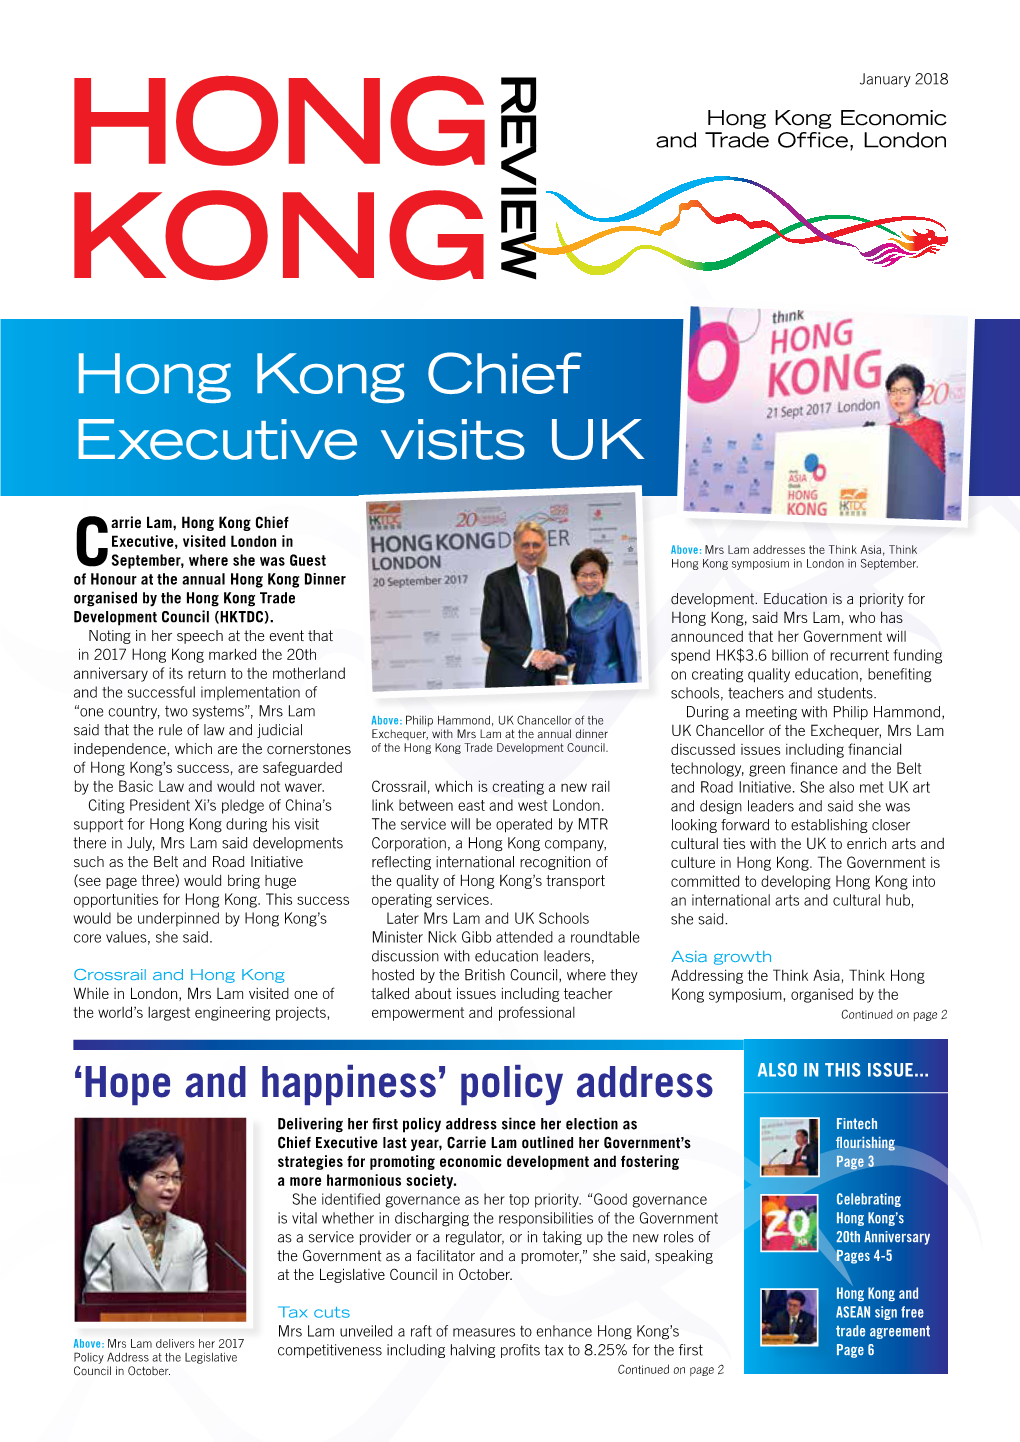 Hong Kong Chief Executive Visits UK